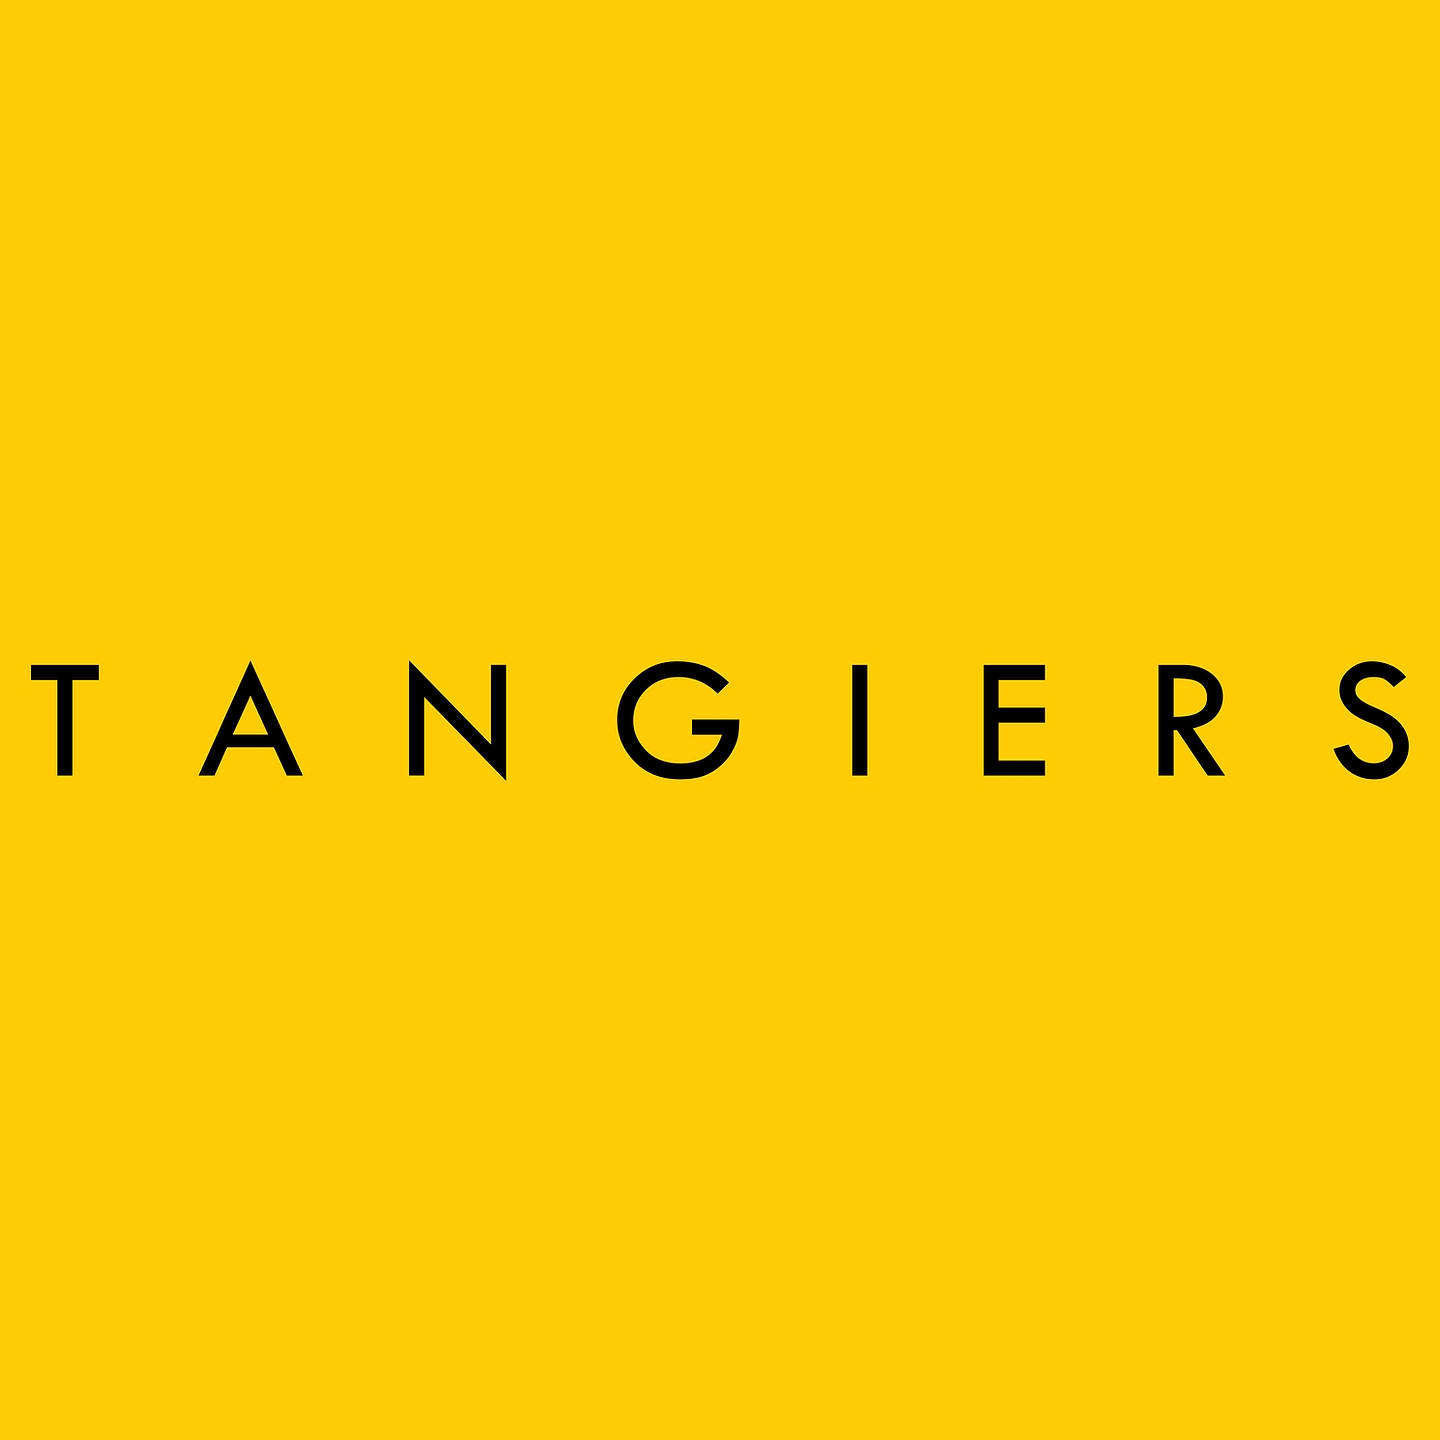 tangiers